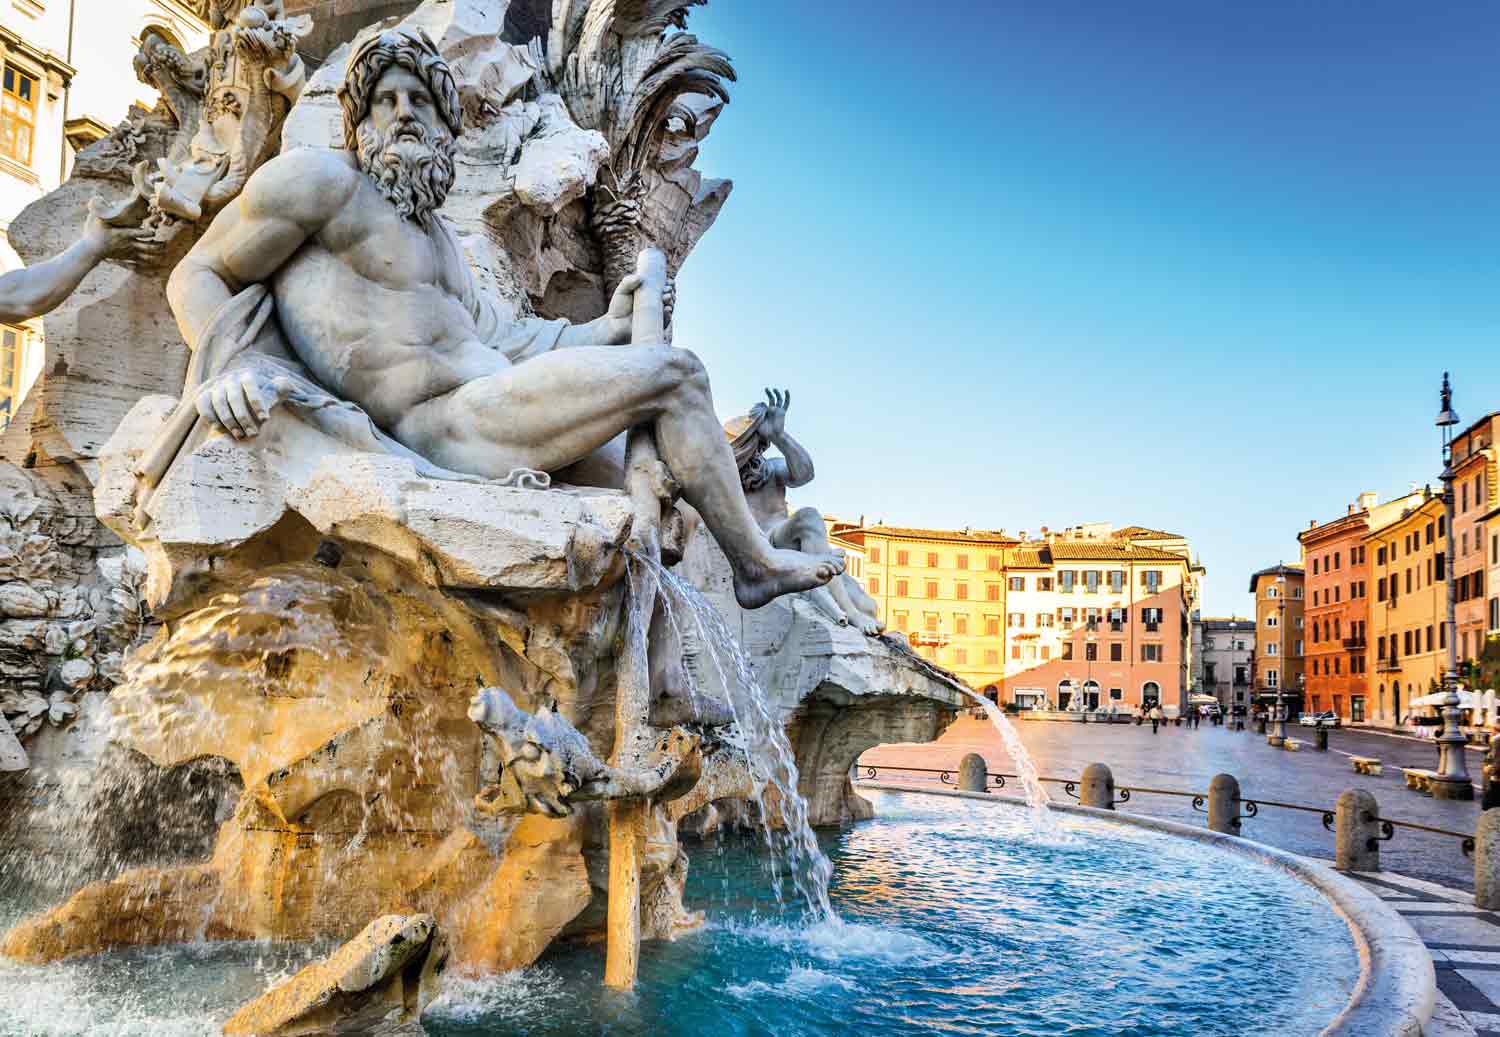 La fontana dei Quattro Fiumi in Piazza Navona